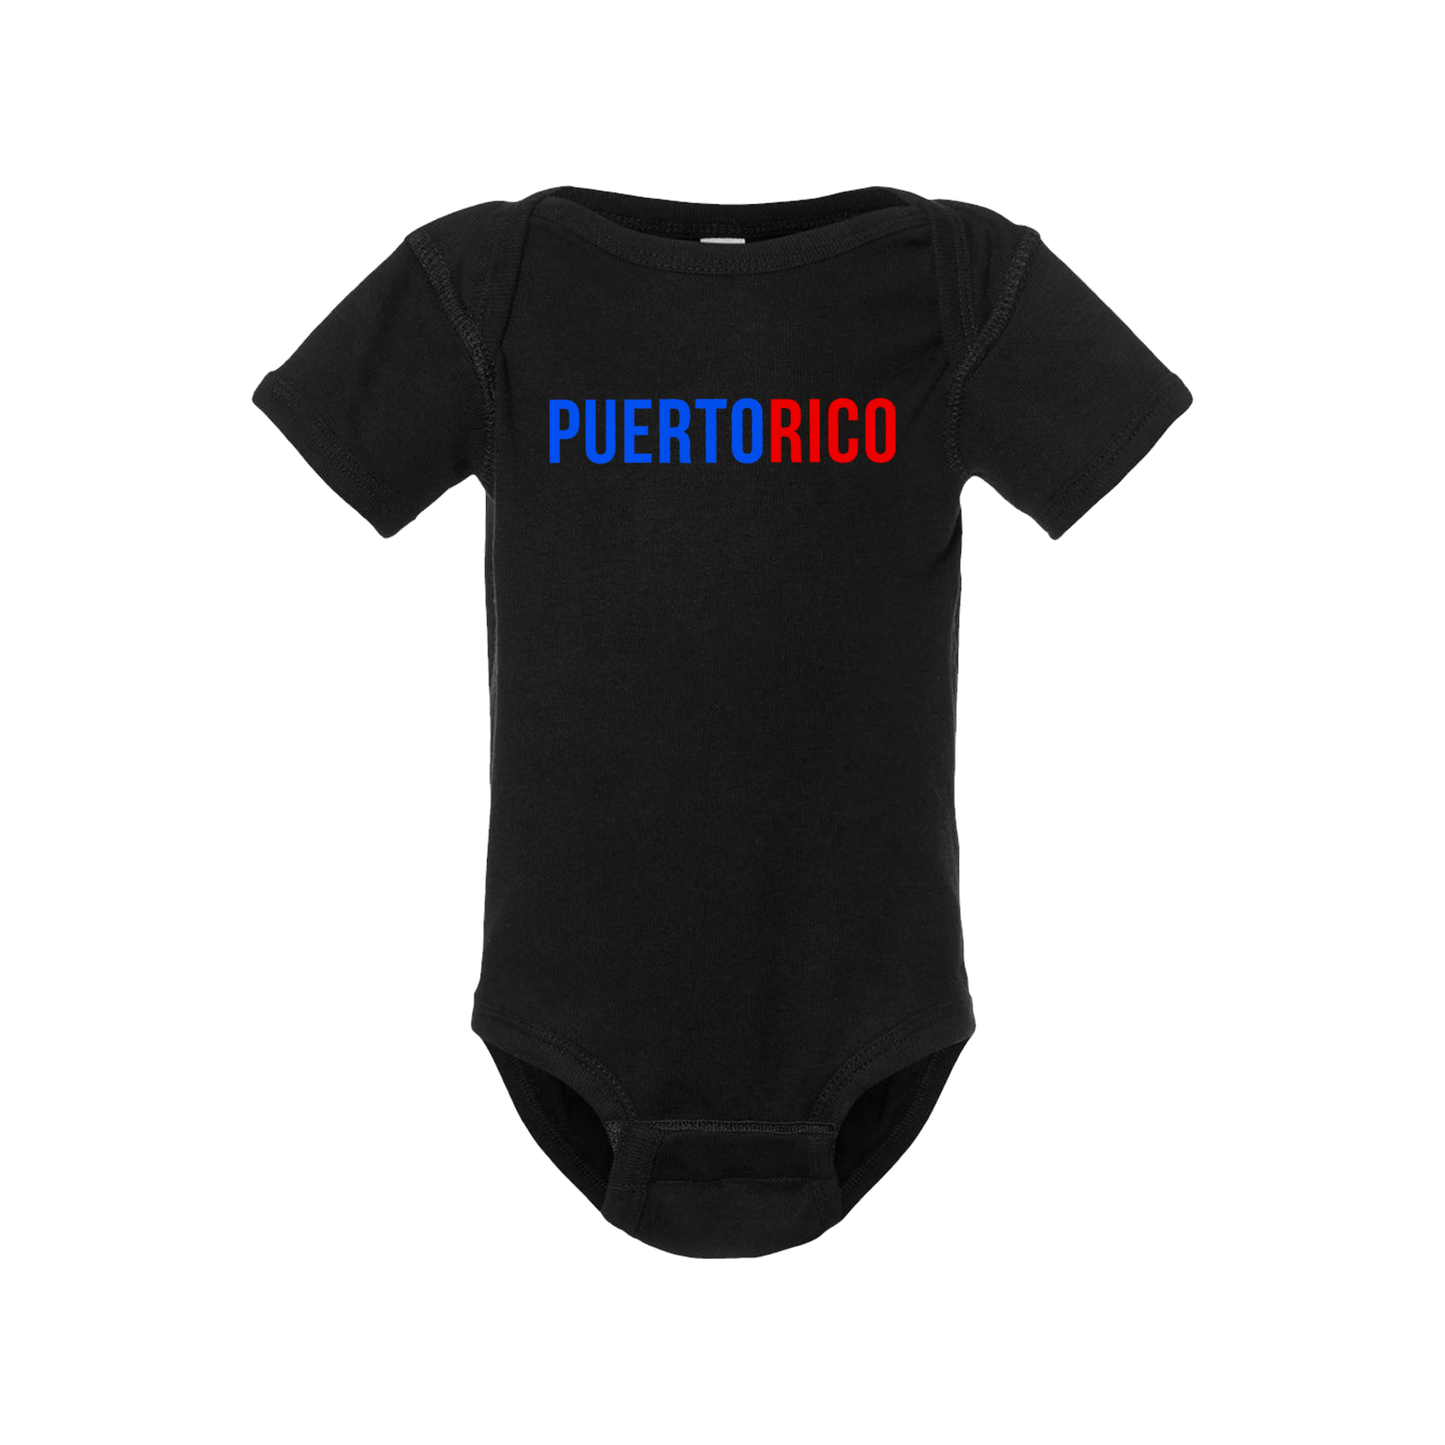 Puerto Rico Short Sleeve Onesie - Babies & Toddlers